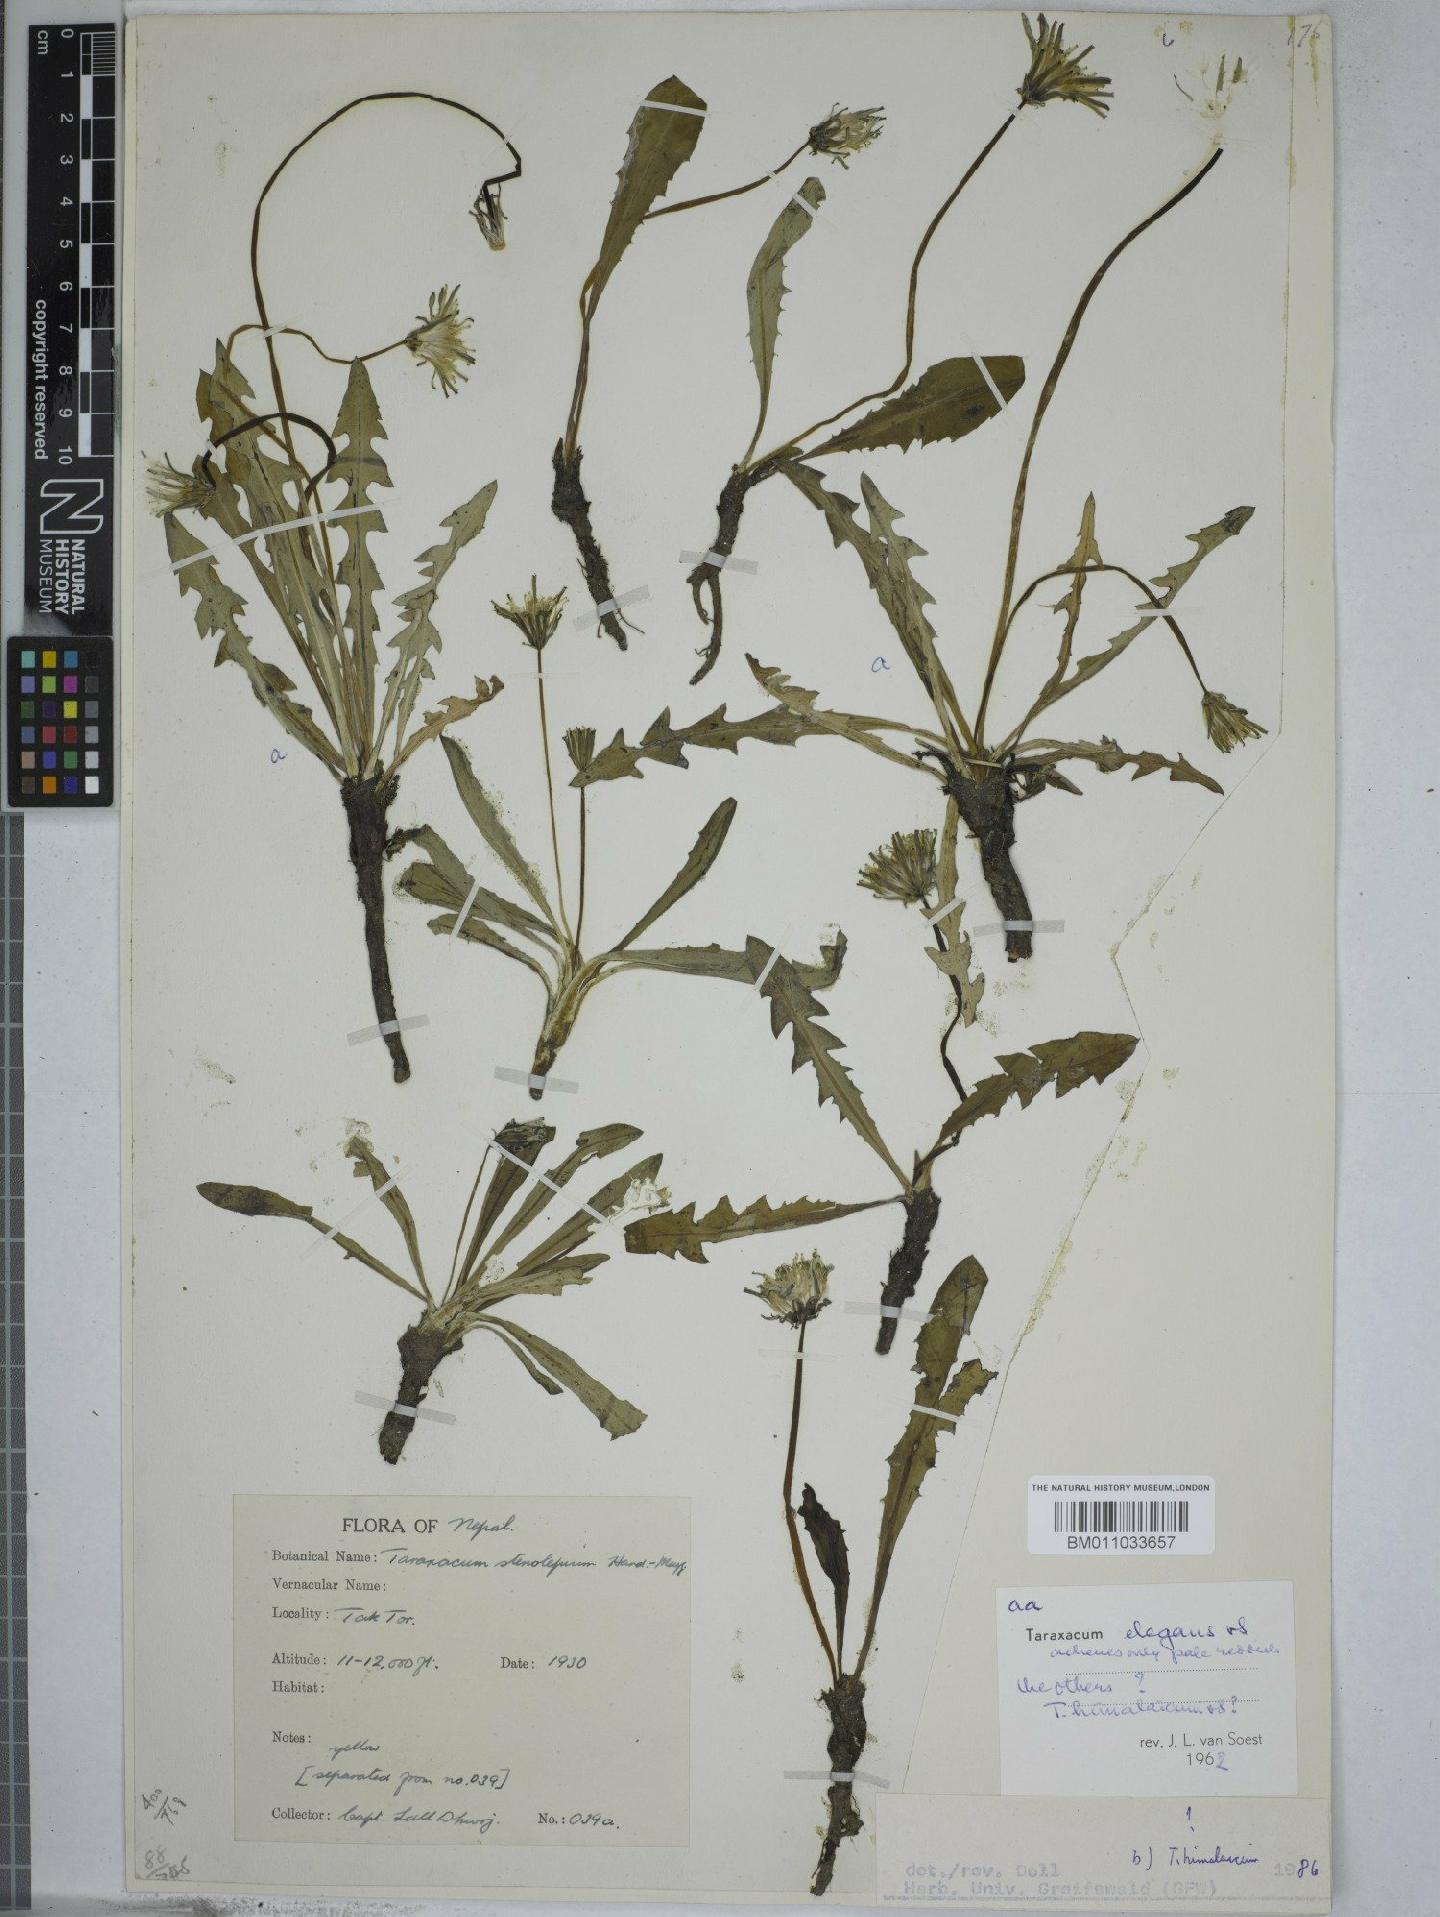 To NHMUK collection (Taraxacum elegans Soest; NHMUK:ecatalogue:9157270)